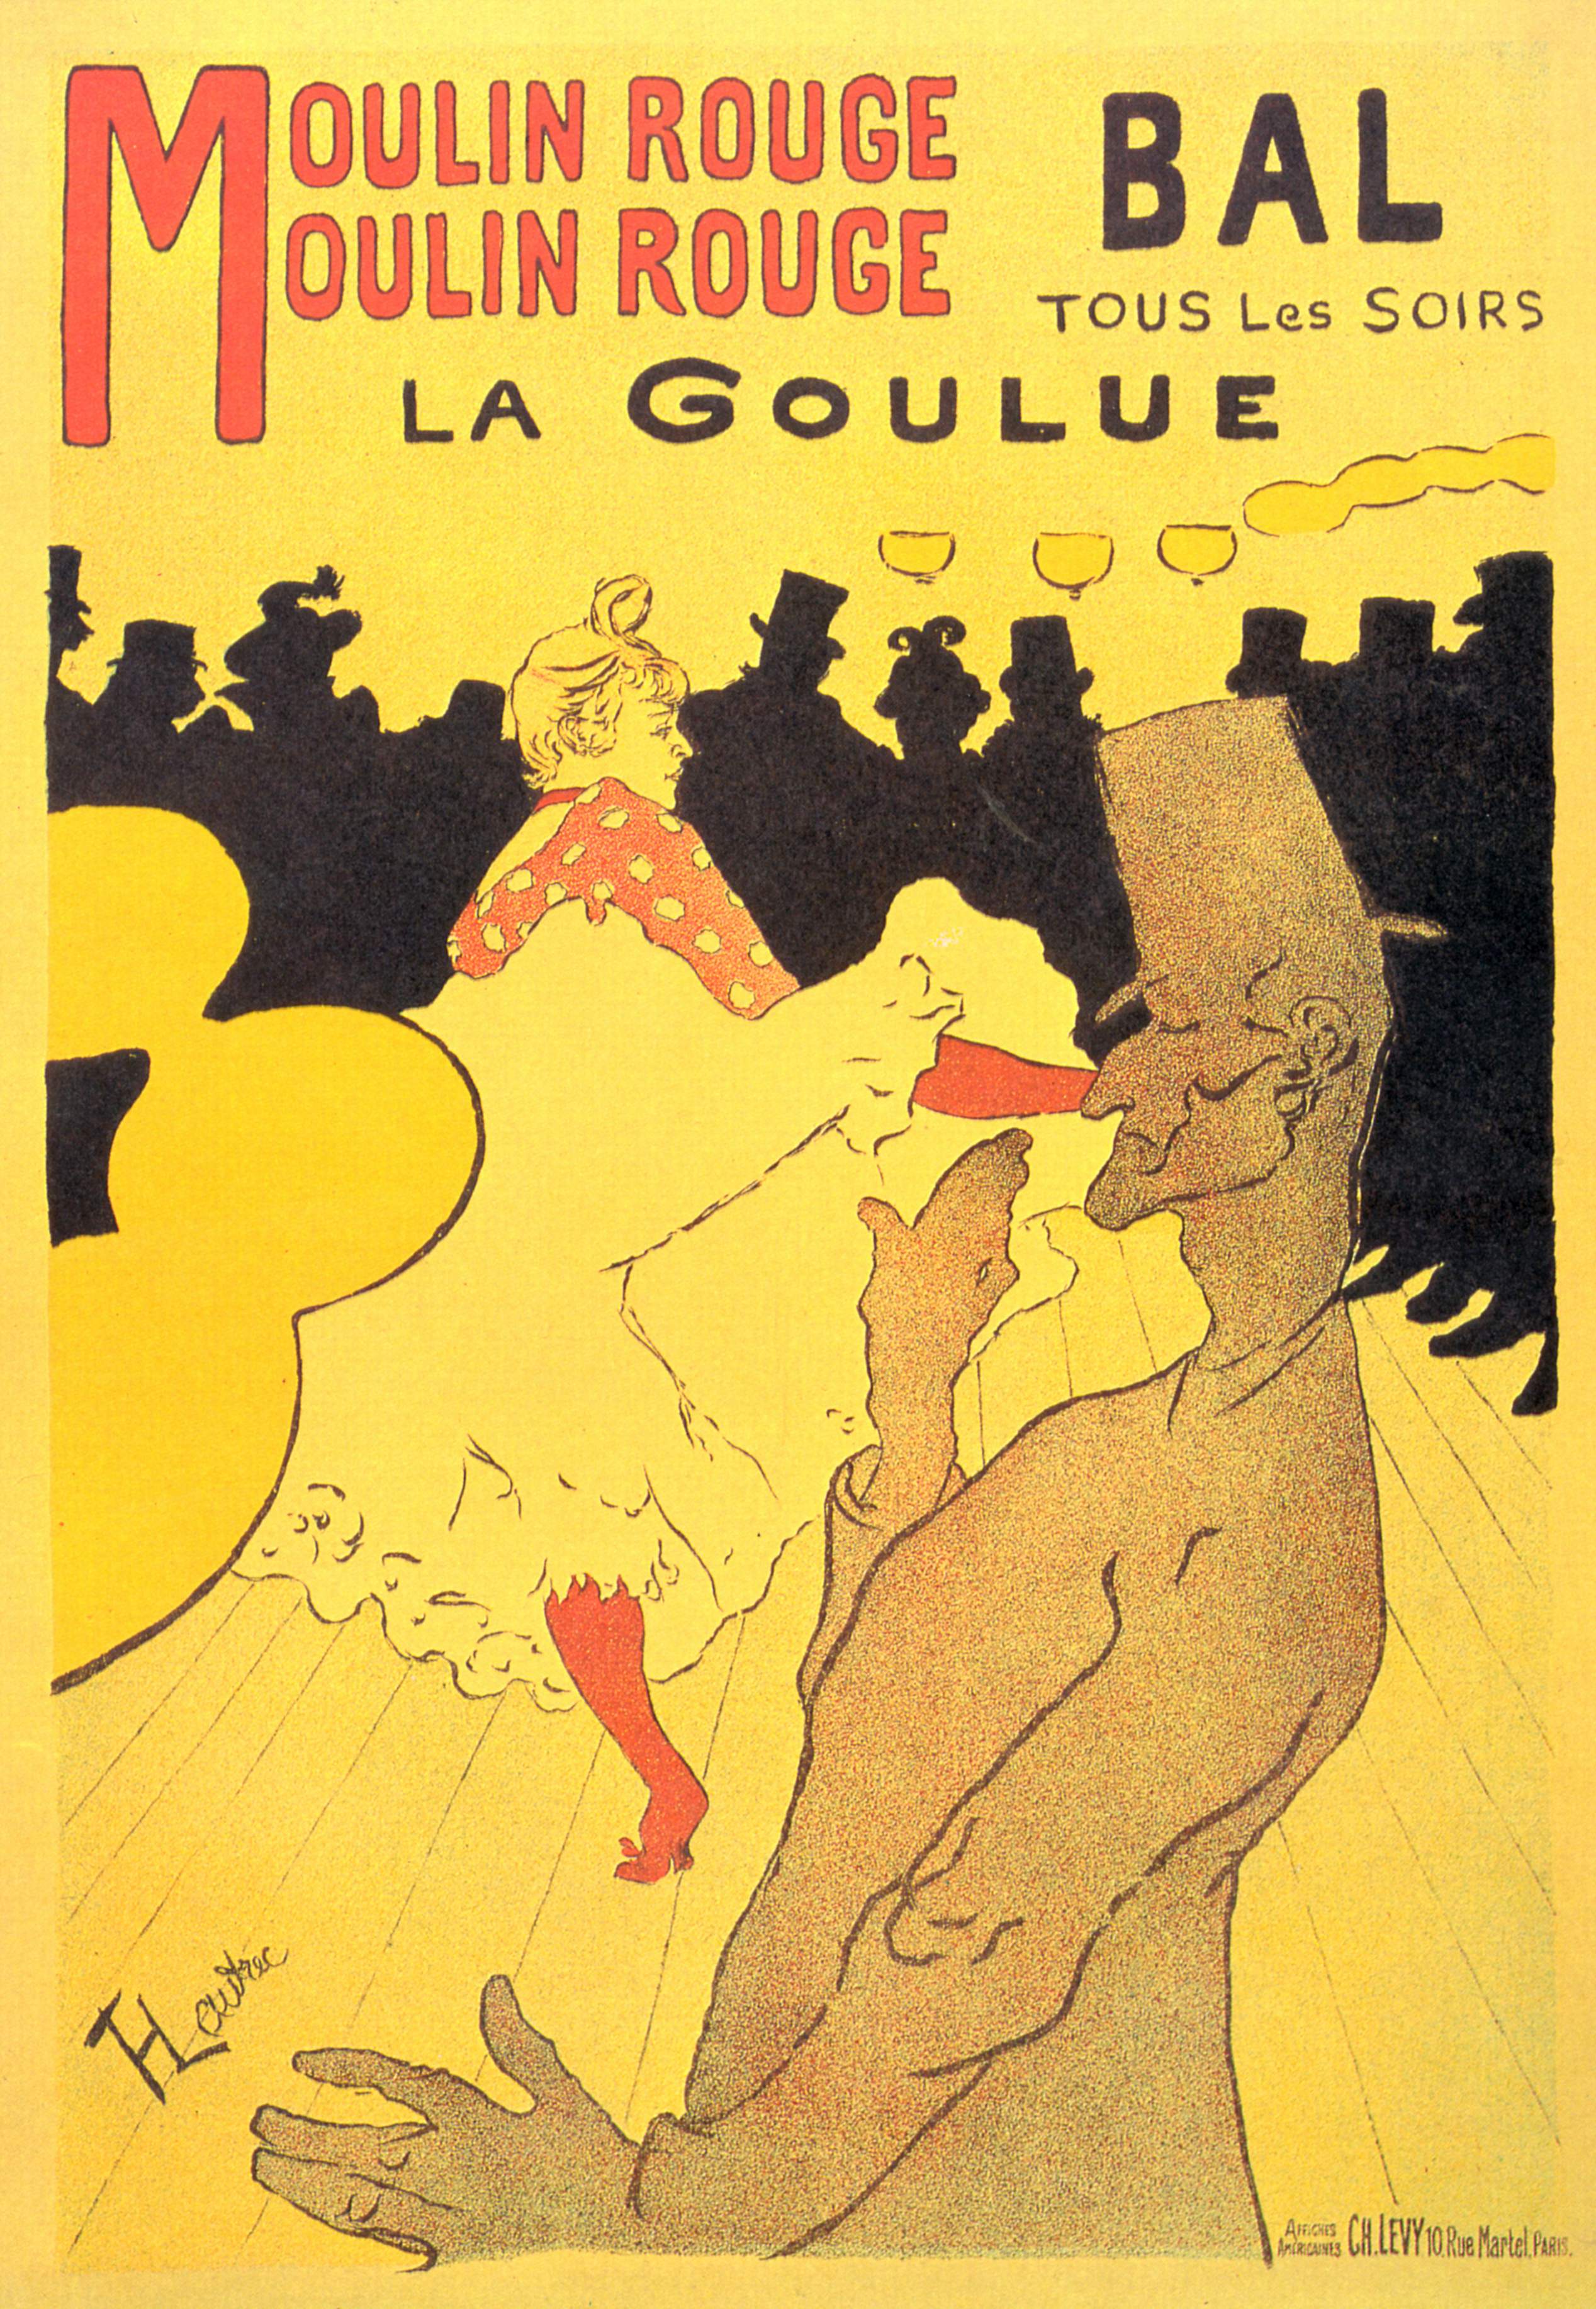 6 octobre 1889  Ouverture du Moulin Rouge